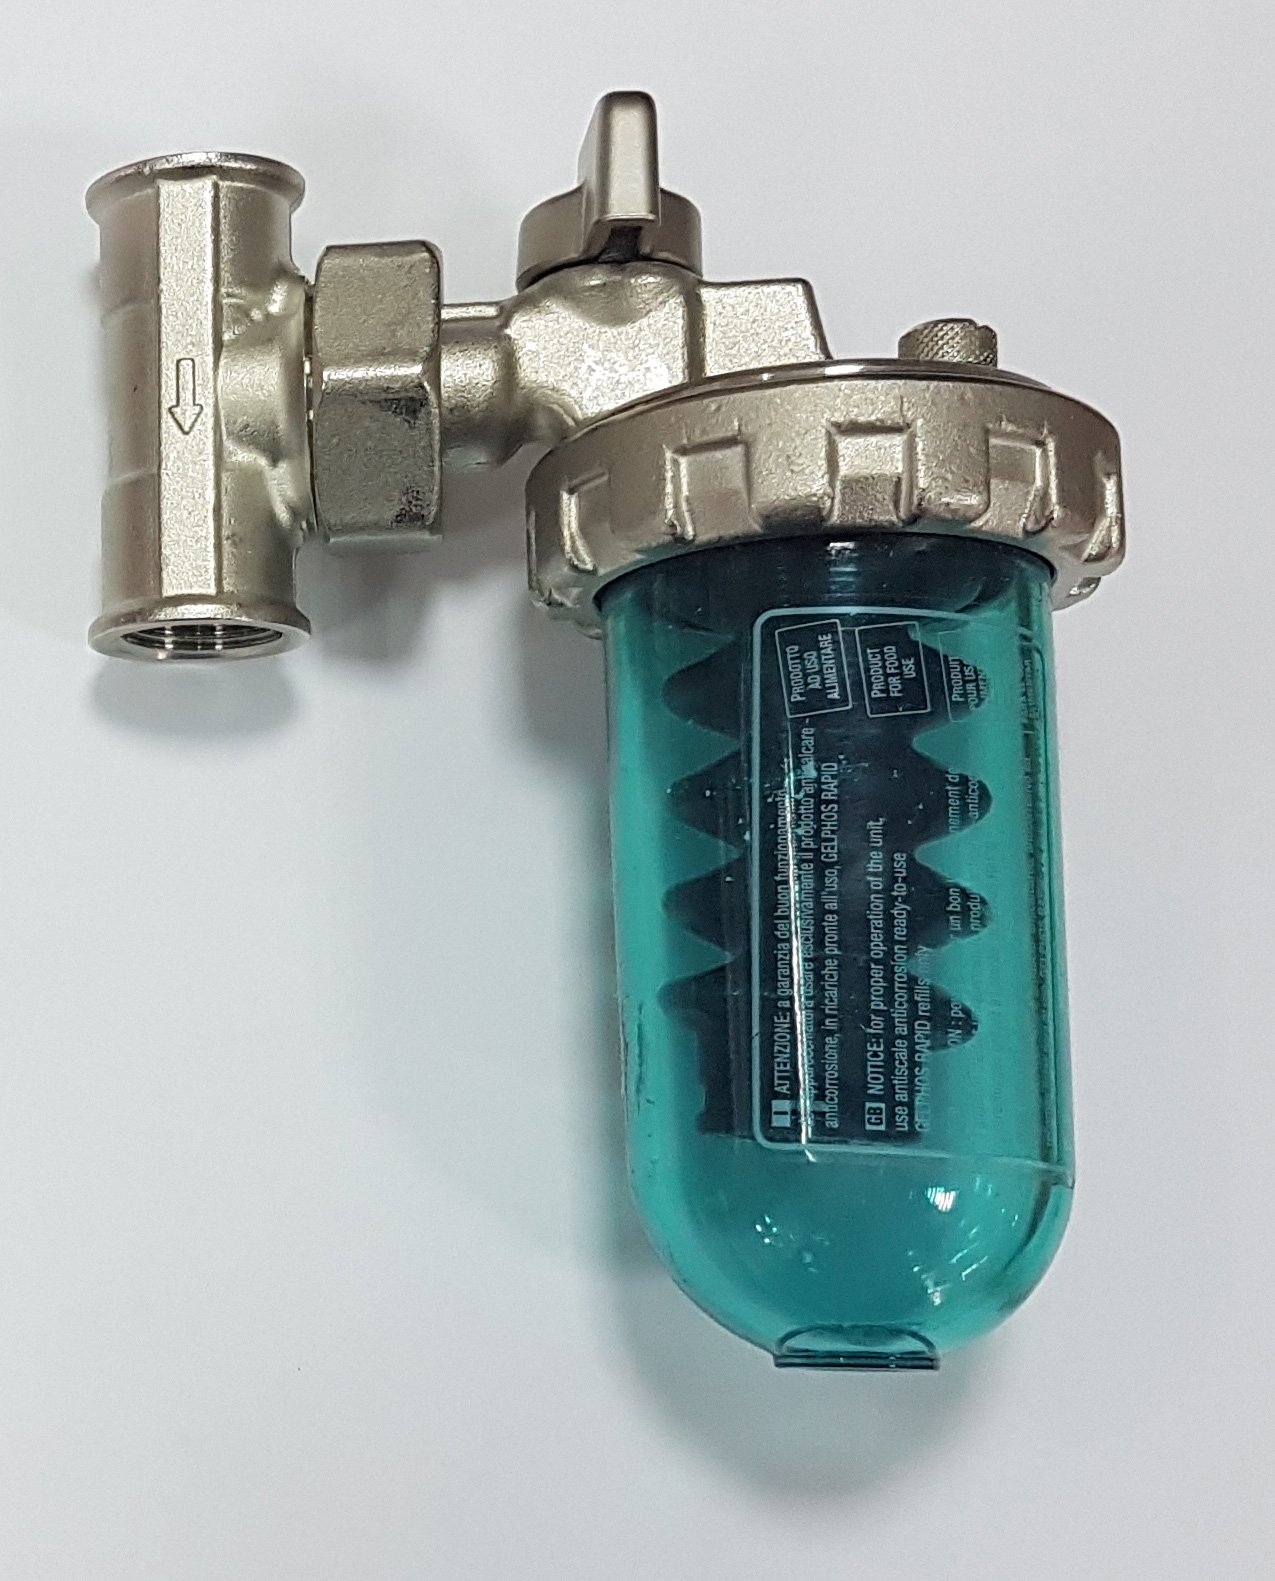 Фильтр смягчить воду. Дозатор Gel Dosaphos 250 1/2". Дозатор Gel Dosaphos 250 1/2-1/2 Gel (умягчитель воды). Умягчитель воды Dosaphos 250 1/2. Дозатор-умягчитель воды Dosaphos 250.